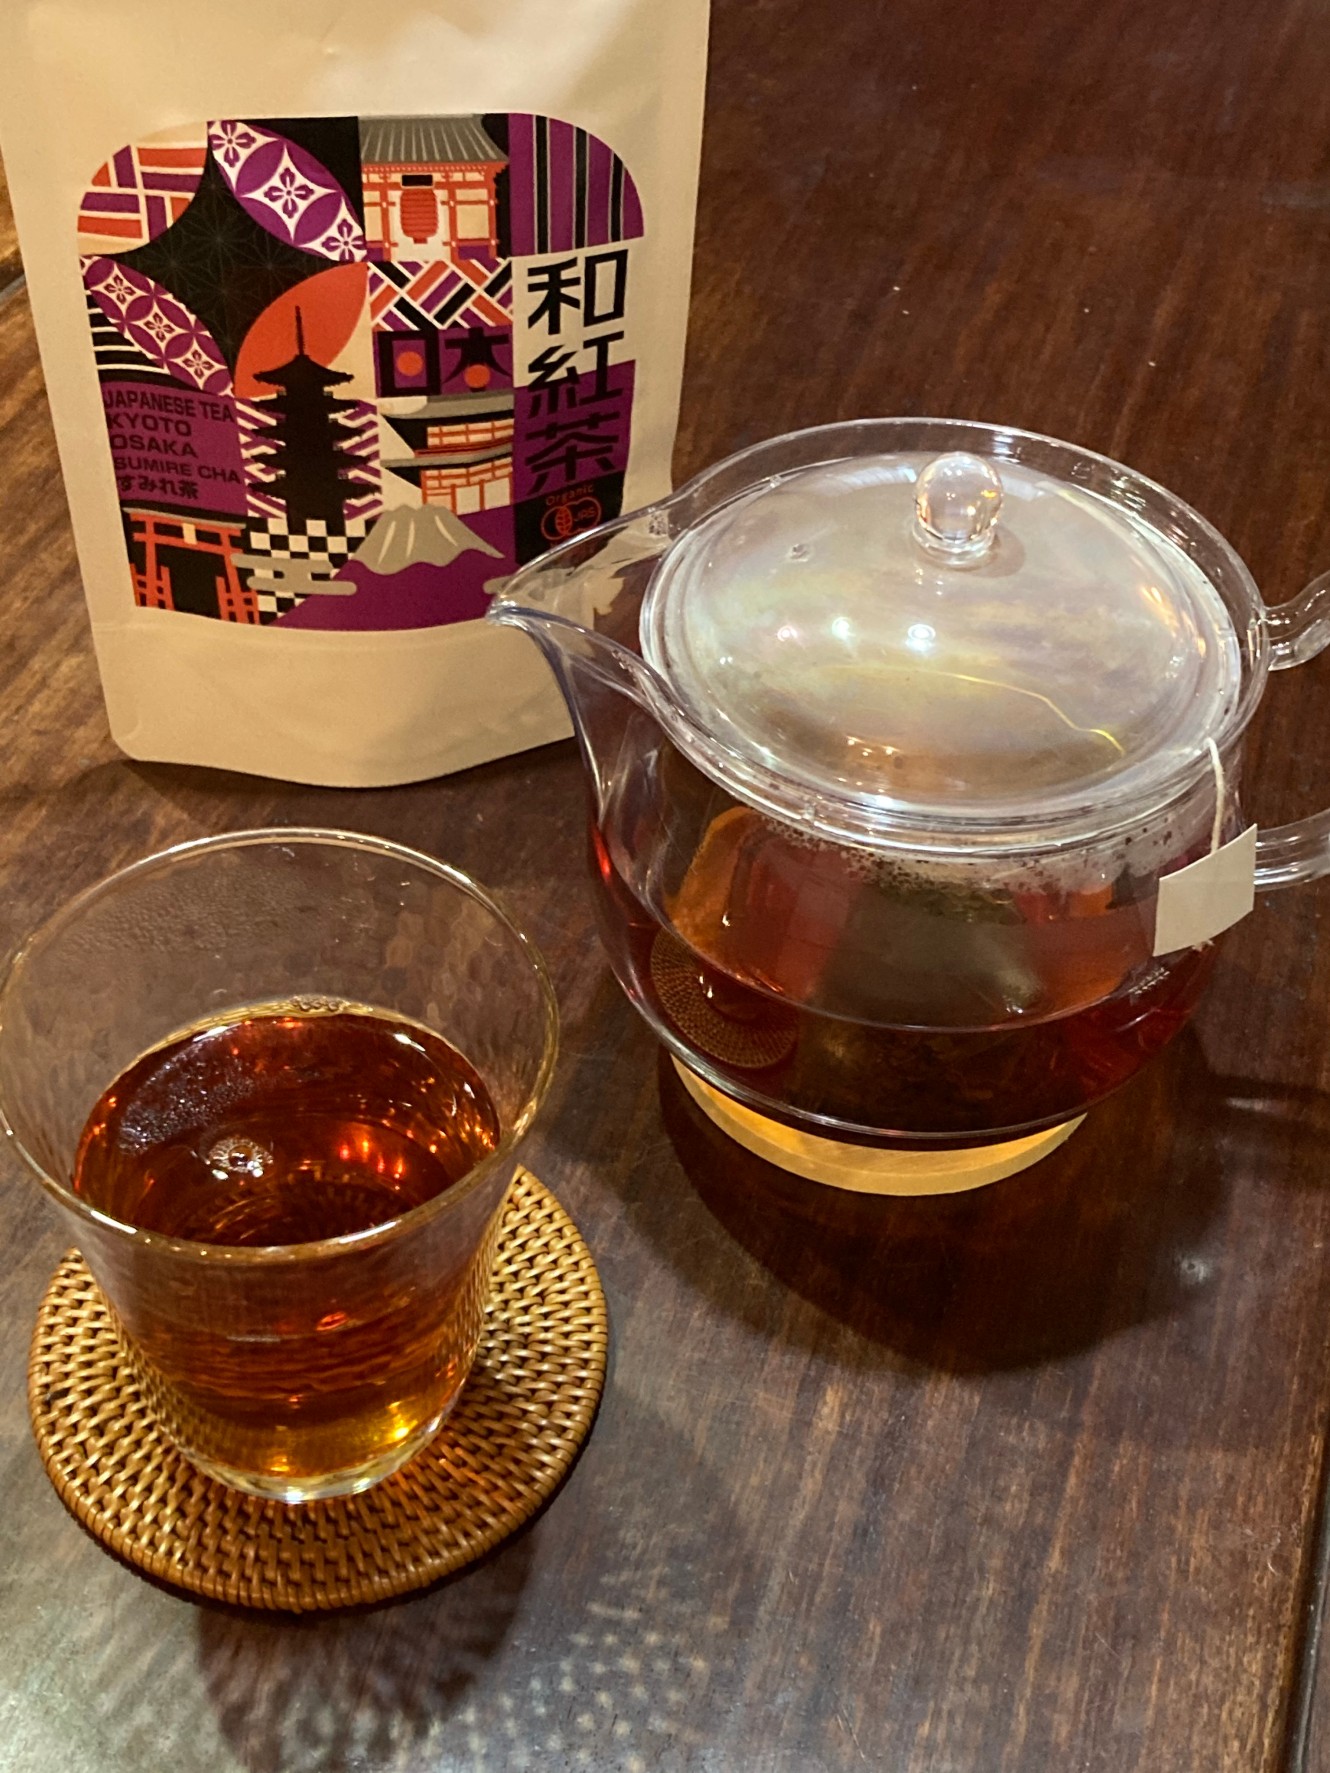 すみれ茶【和紅茶】の飲み方は、お客様でお選びいただけます。